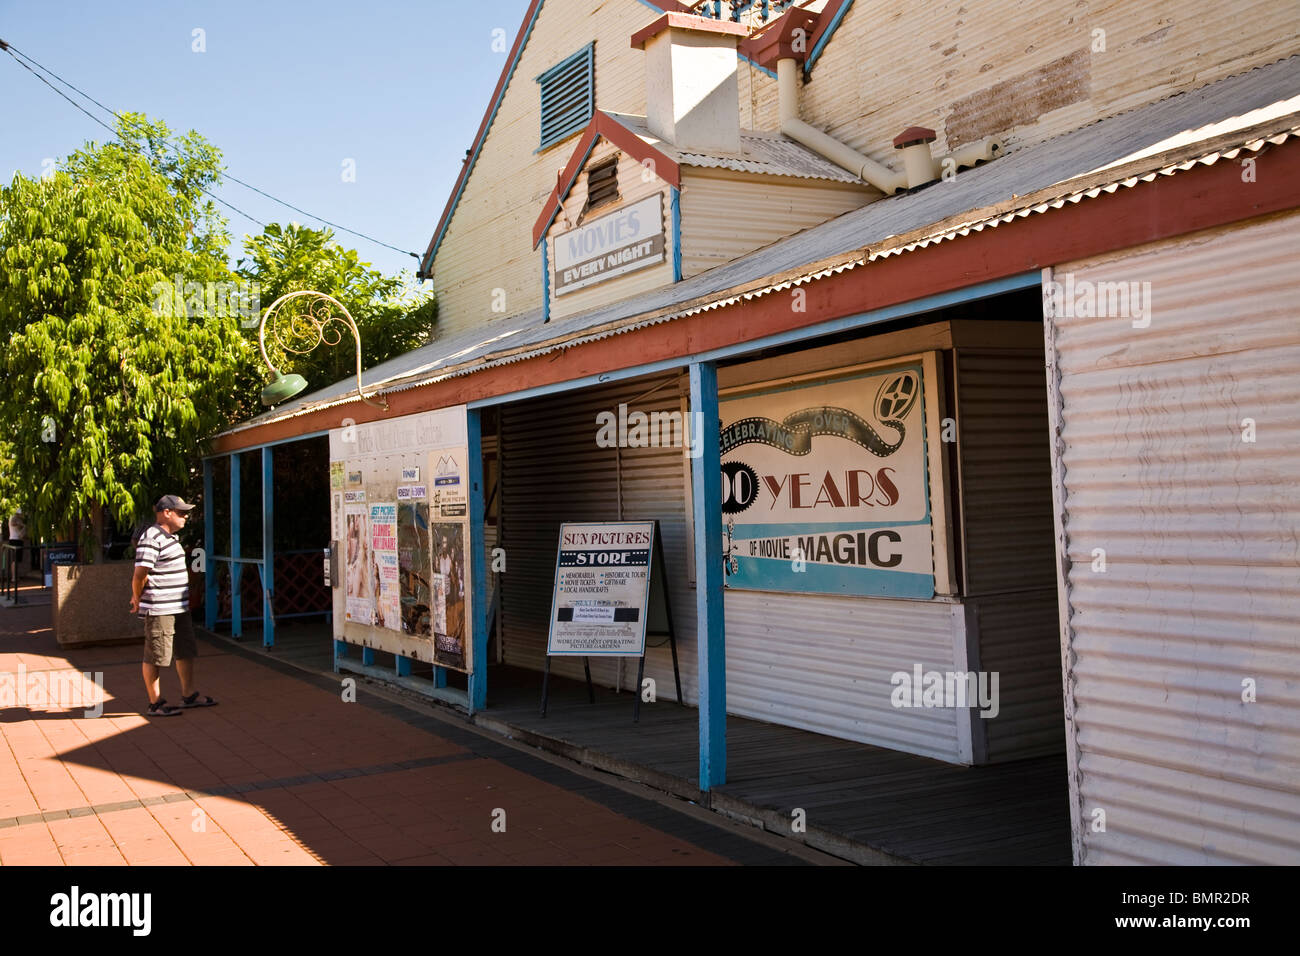 Soleil pittoresque Photo Gardens est dit être la plus ancienne salle de cinéma de plein air Broome Australie Occidentale Banque D'Images